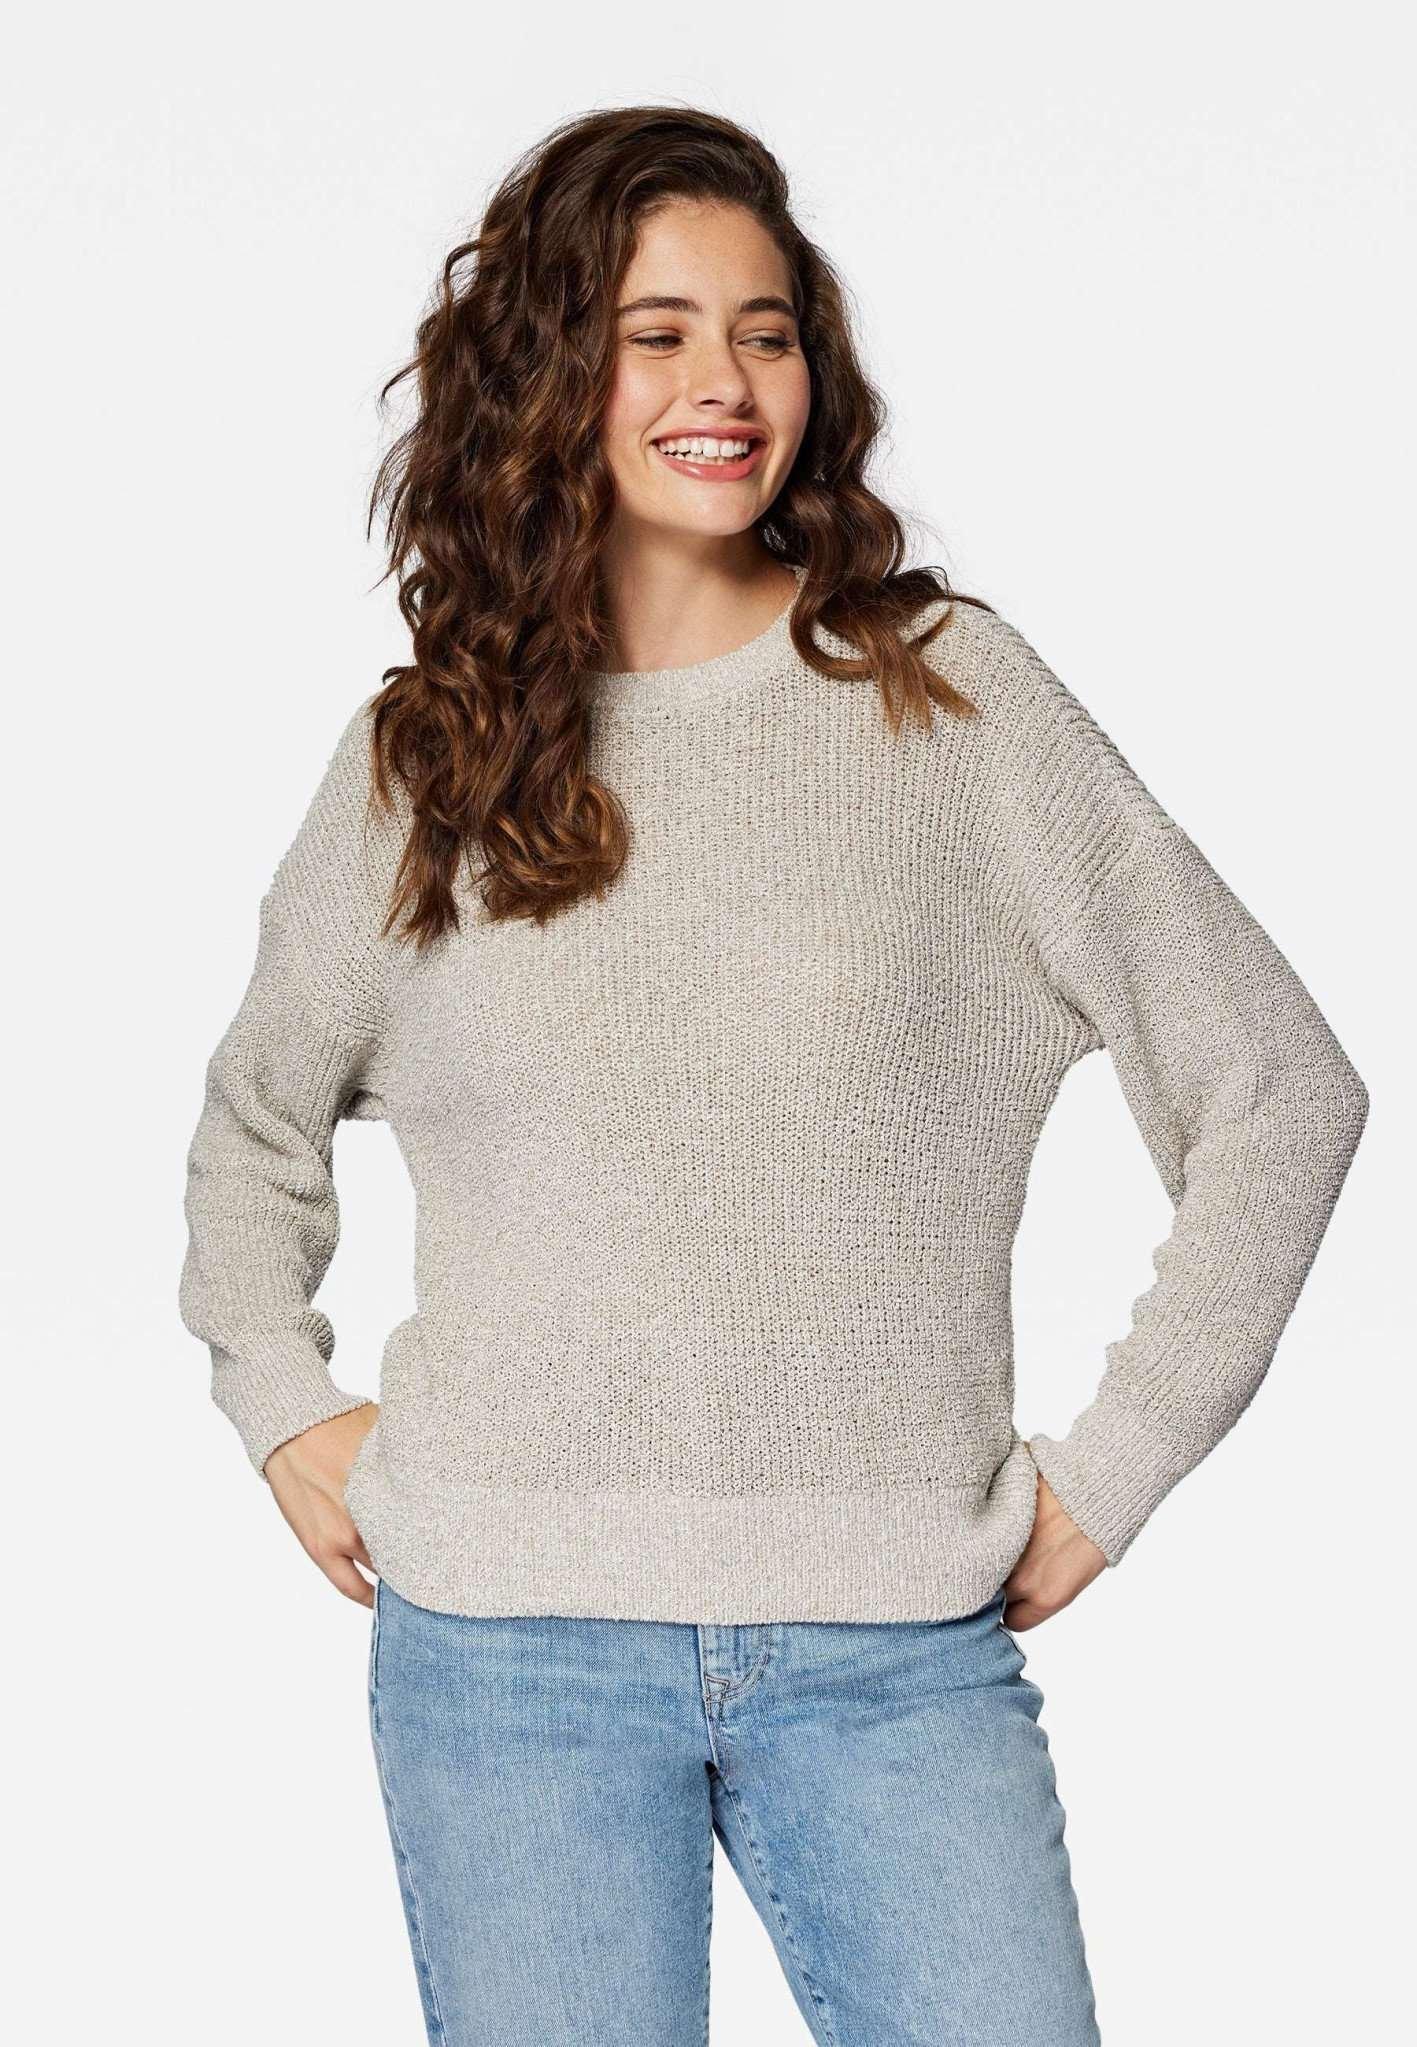 Pullover Crew Neck Sweater Damen Beige M von Mavi